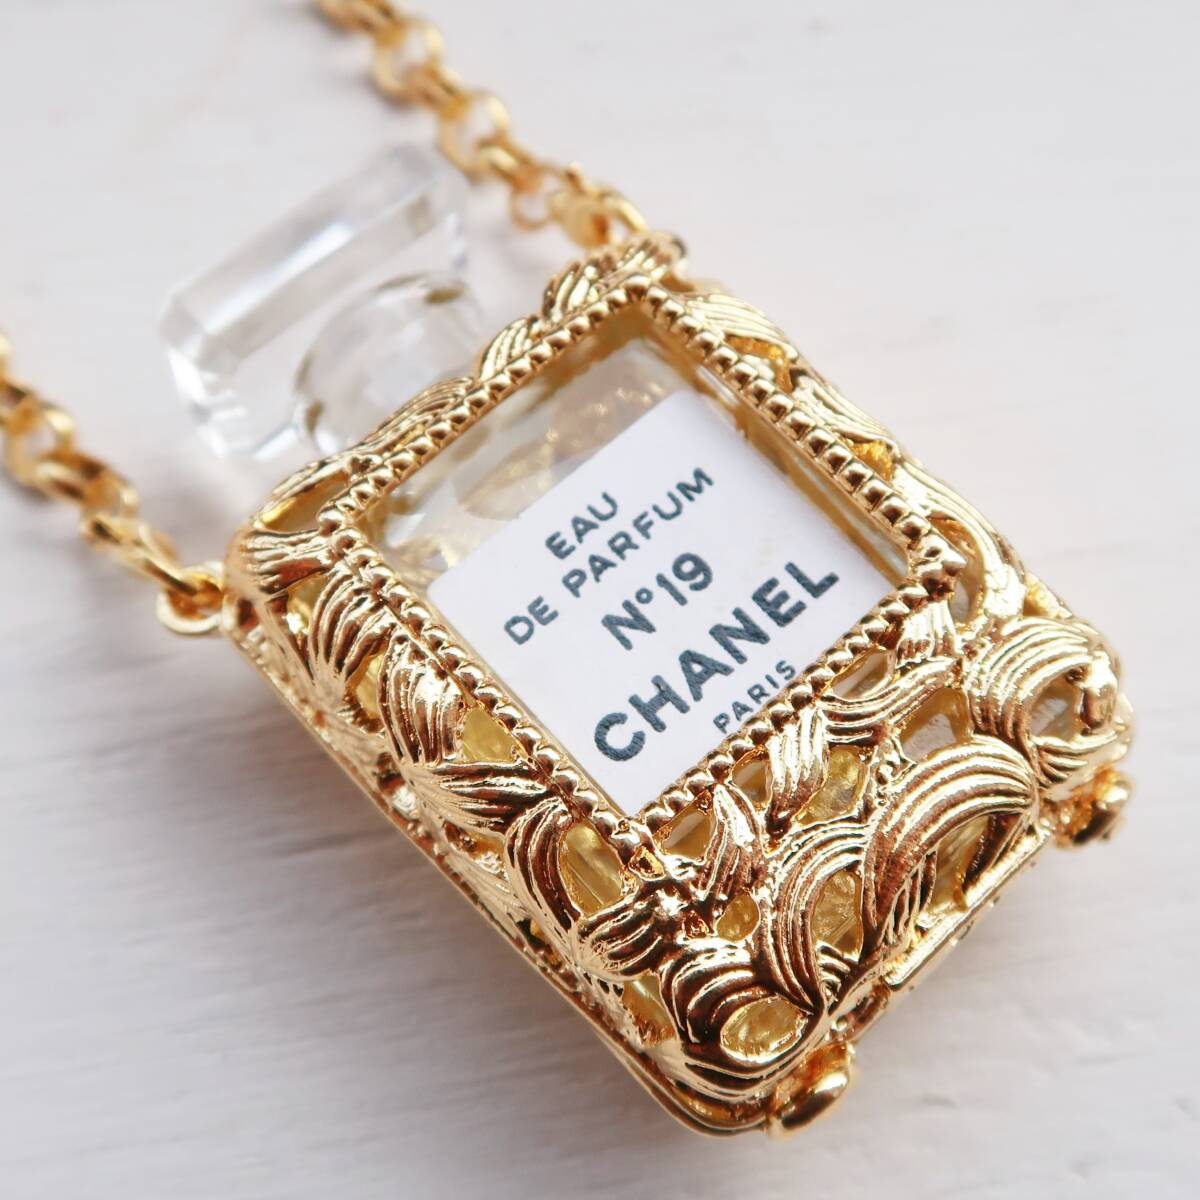  Chanel CHANEL NO.19 духи Mini bottleneck отсутствует Gold аксессуары Vintage редкость прекрасный товар духи бутылка пуховка .-m кейс 